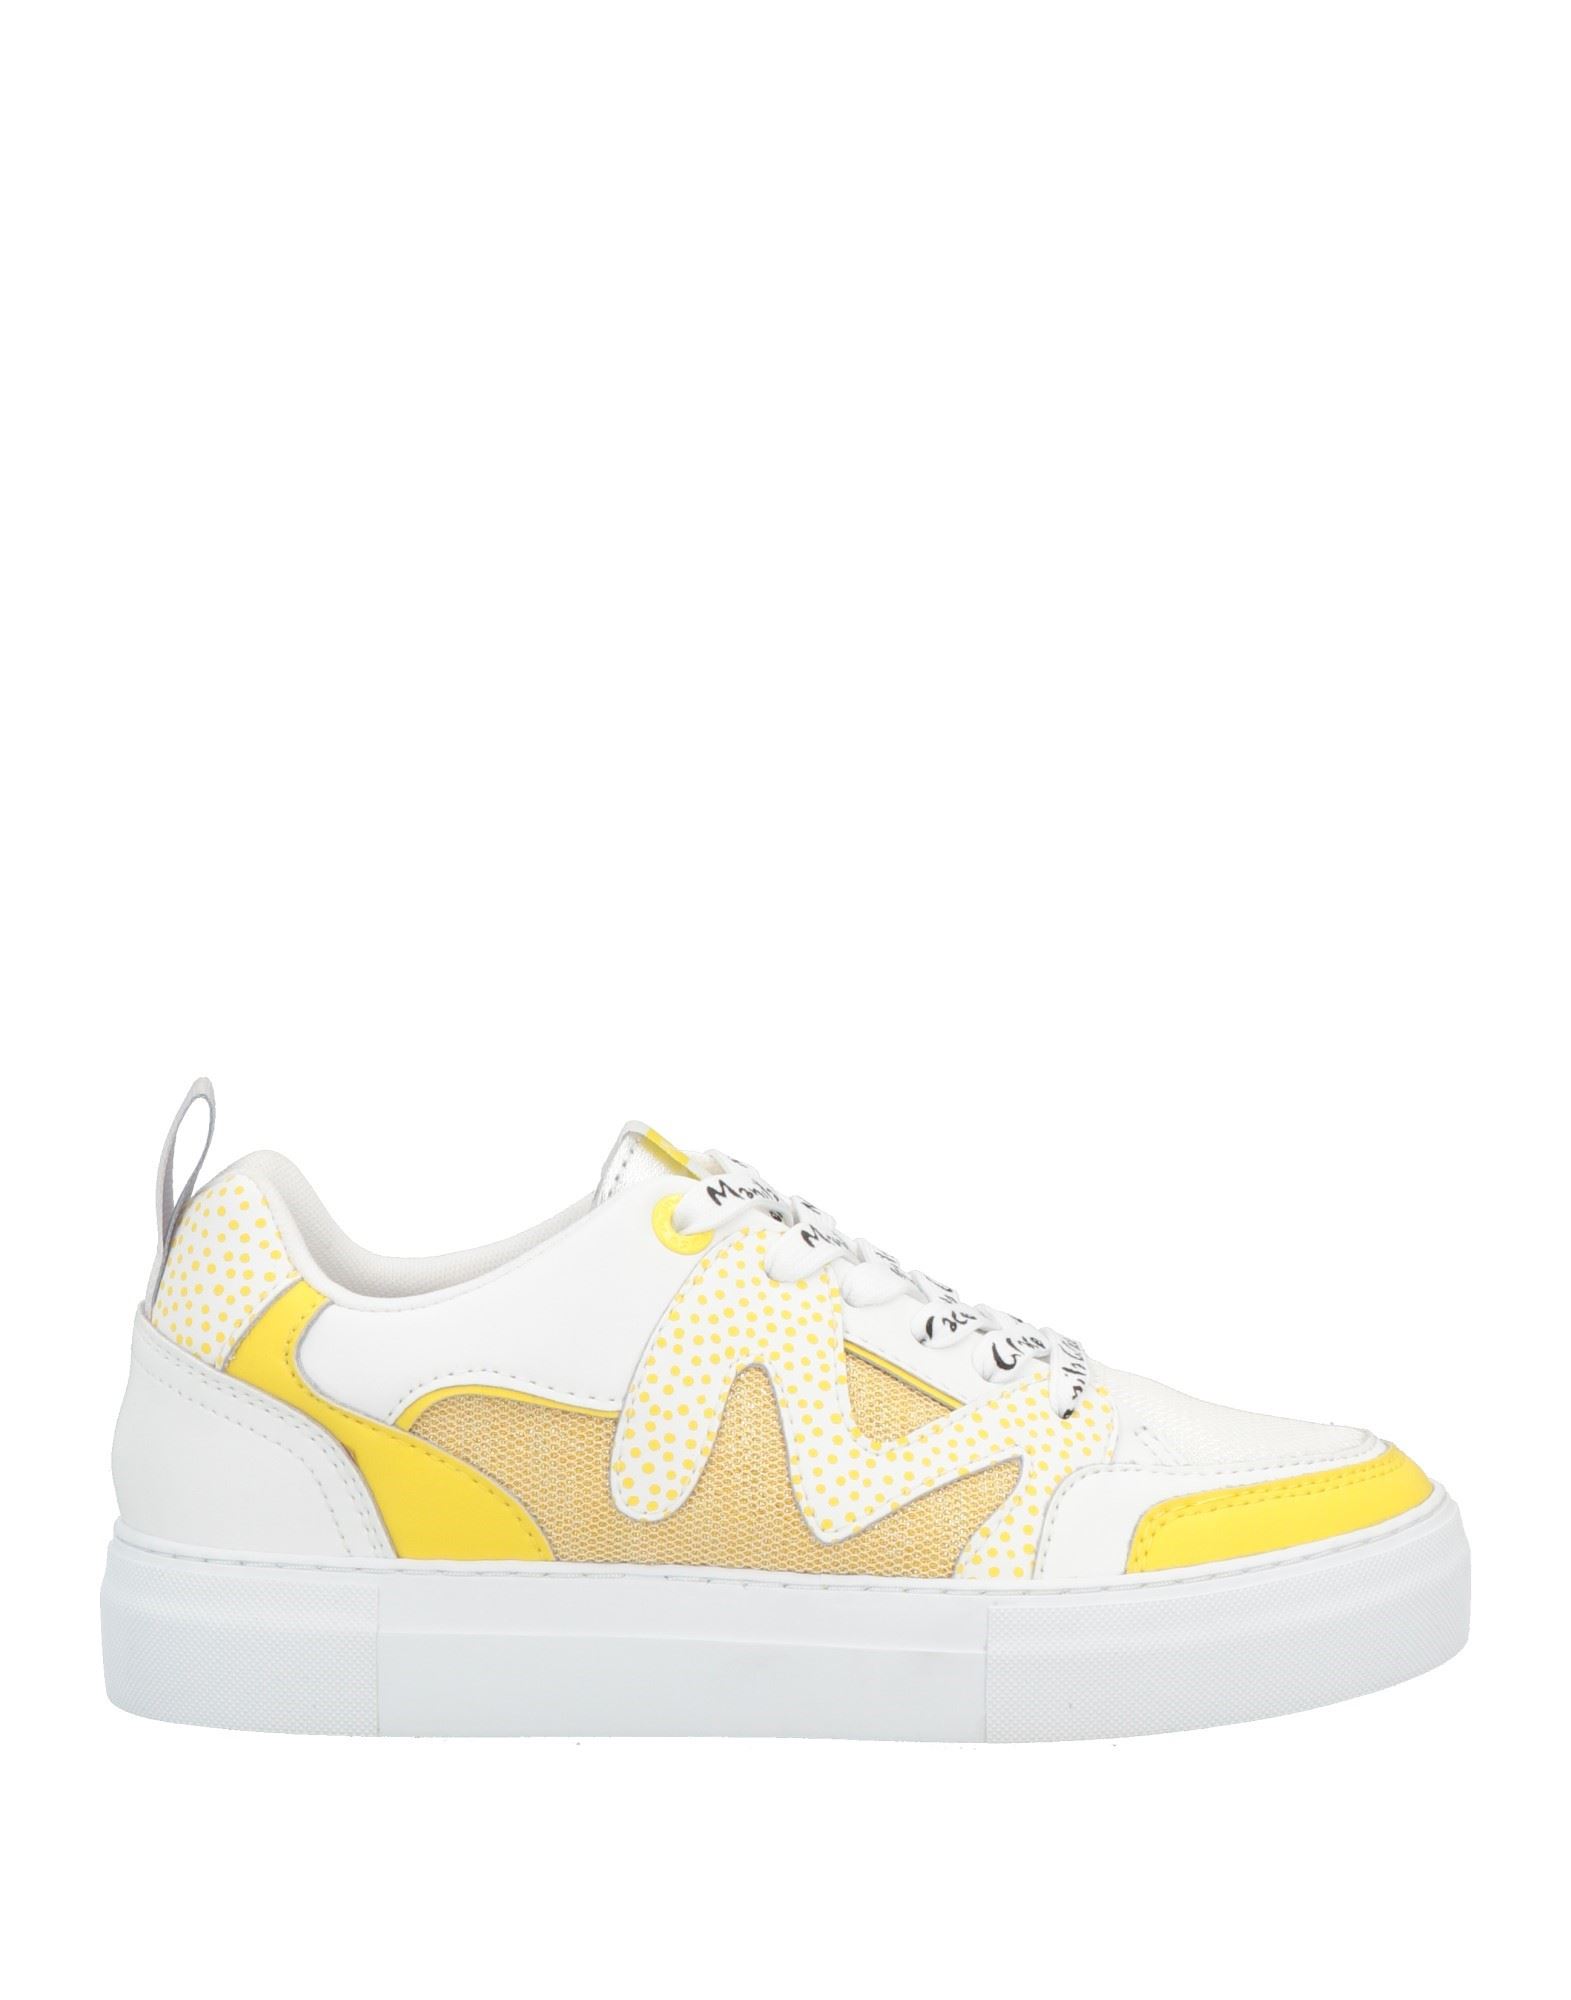 Manila Grace Sneakers In Yellow